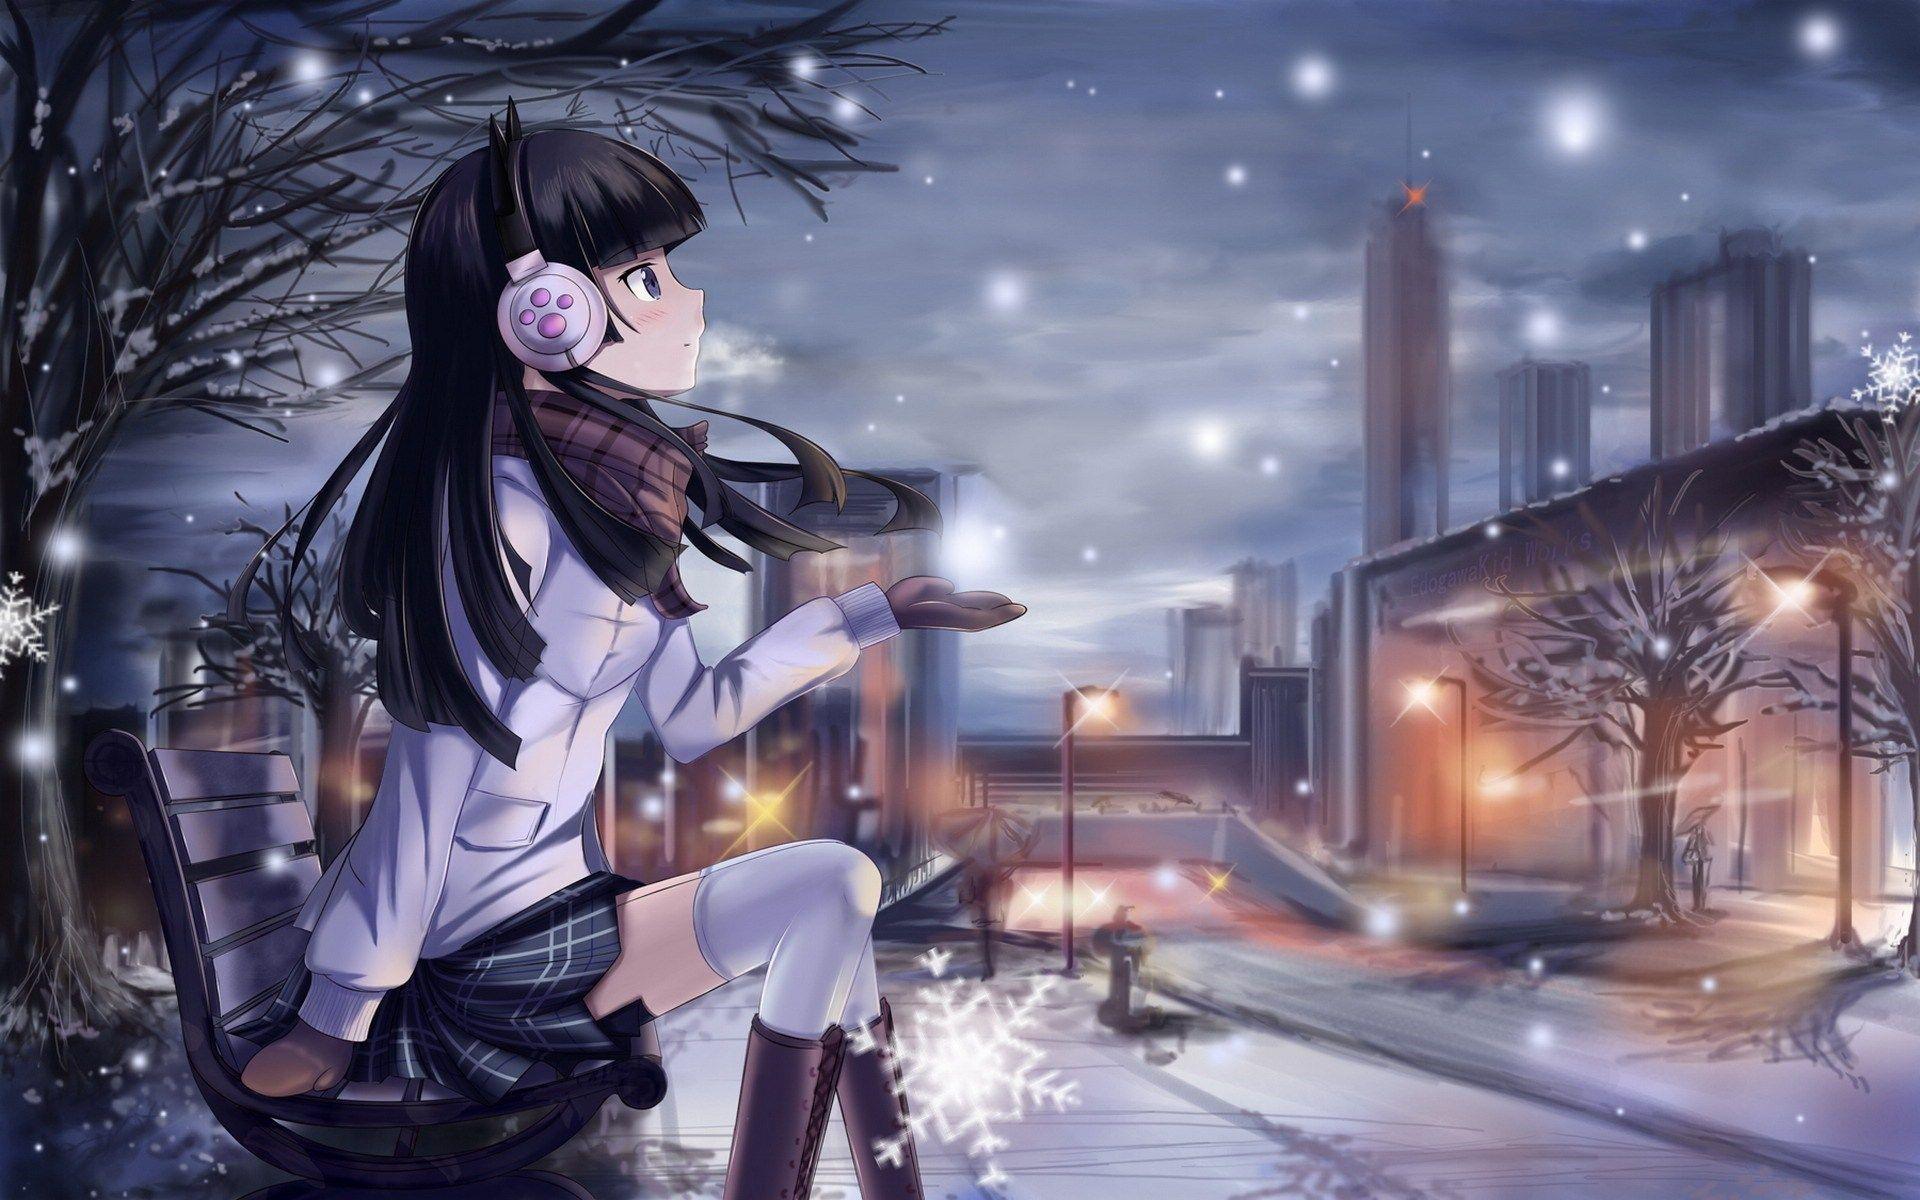 Beautiful Winter Anime Picture. Digiatto.com. HD